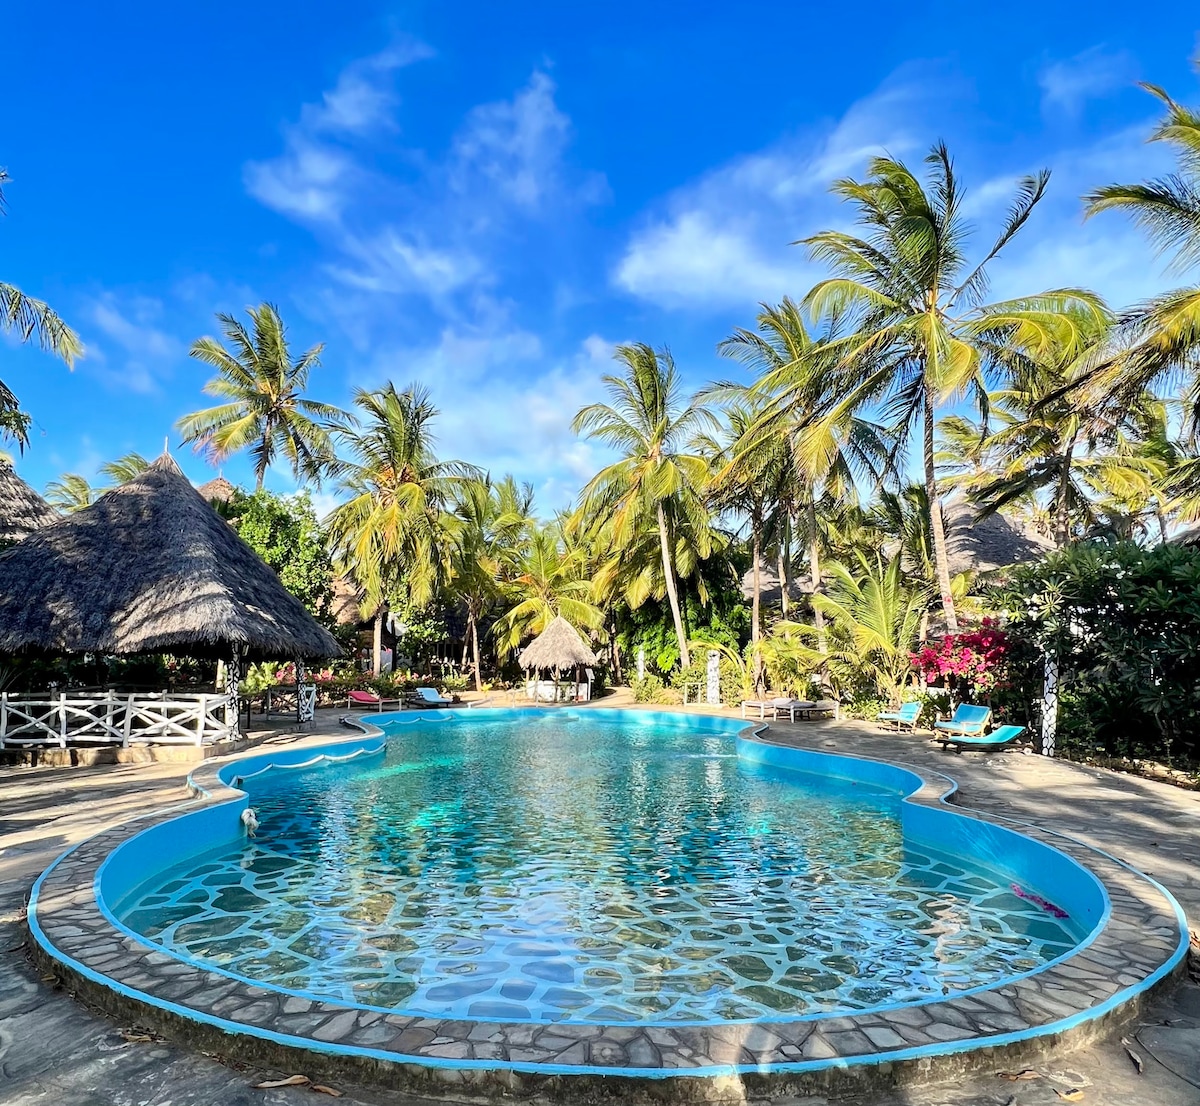 Paradise Haven Mambrui/Malindi